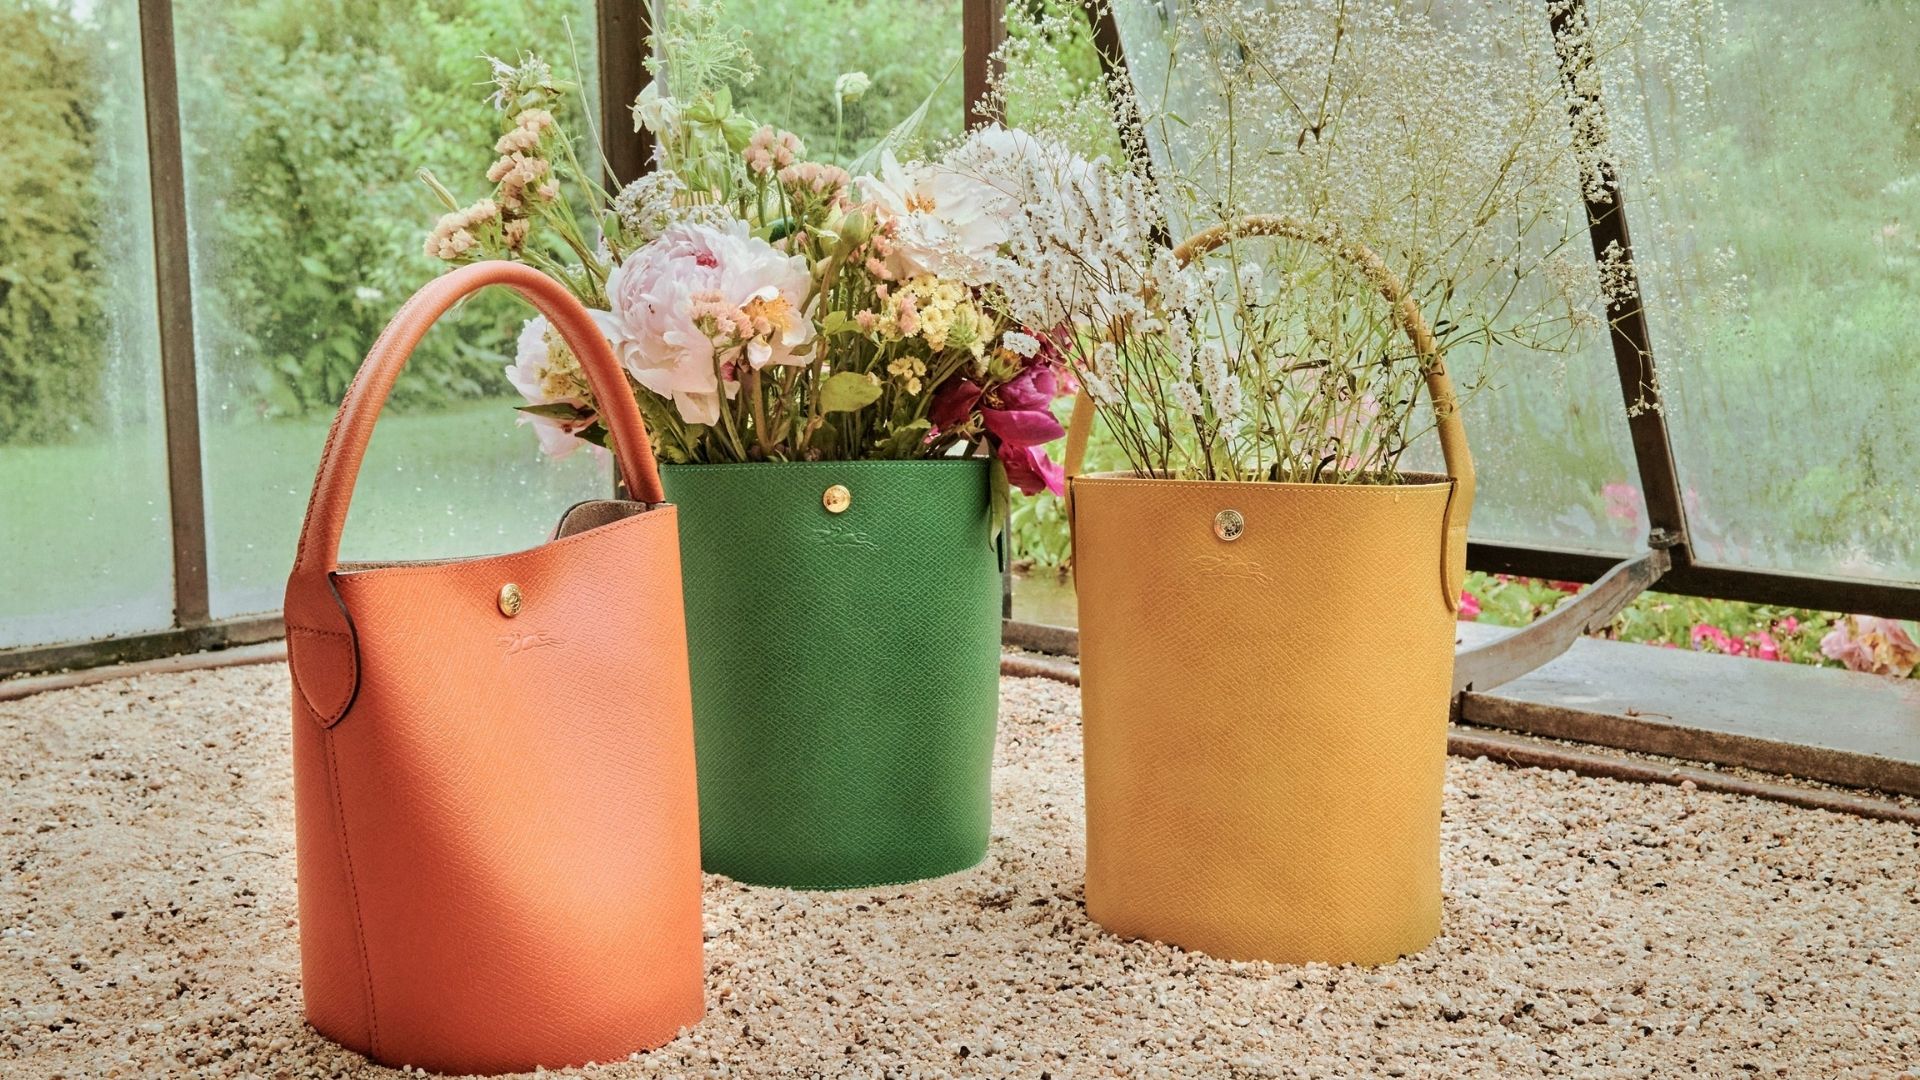 【時尚】明豔色彩融法式風情 Longchamp全新水桶袋面世